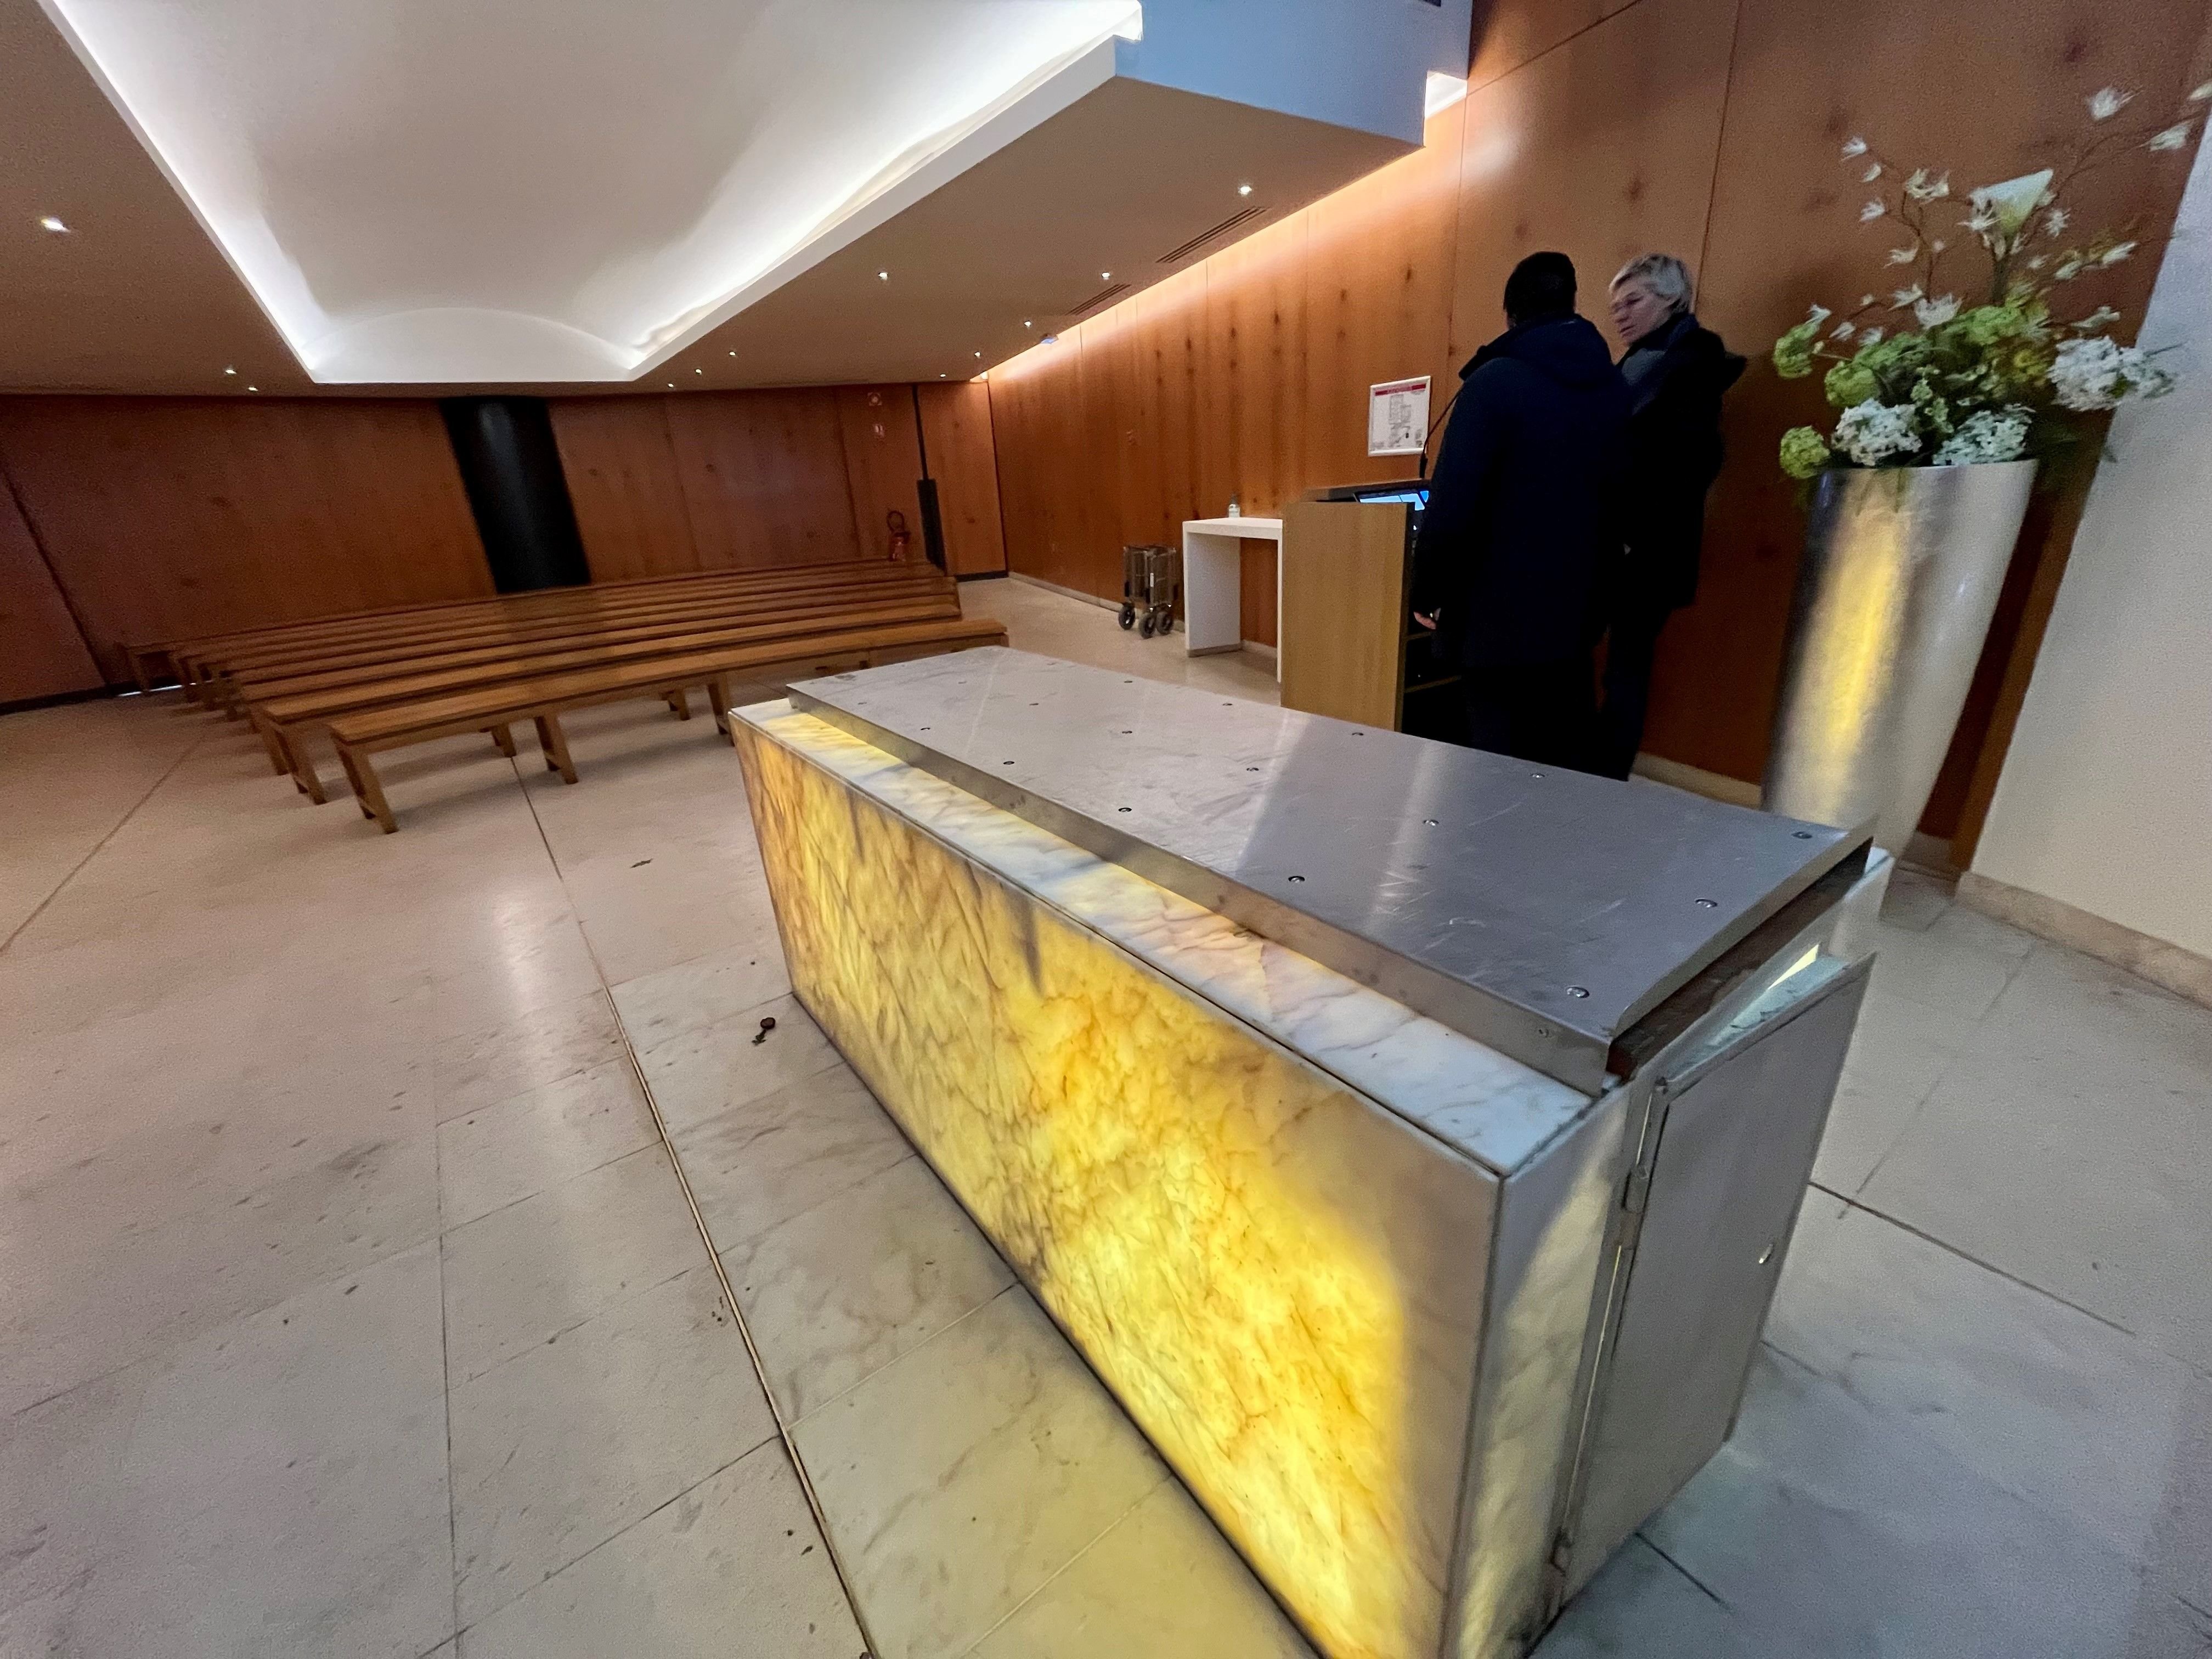 Paris (XVIIe), vendredi. Au funérarium des Batignolles, la municipalité entend proposer de plus nombreux services, notamment pour les cérémonies. LP/E.J.